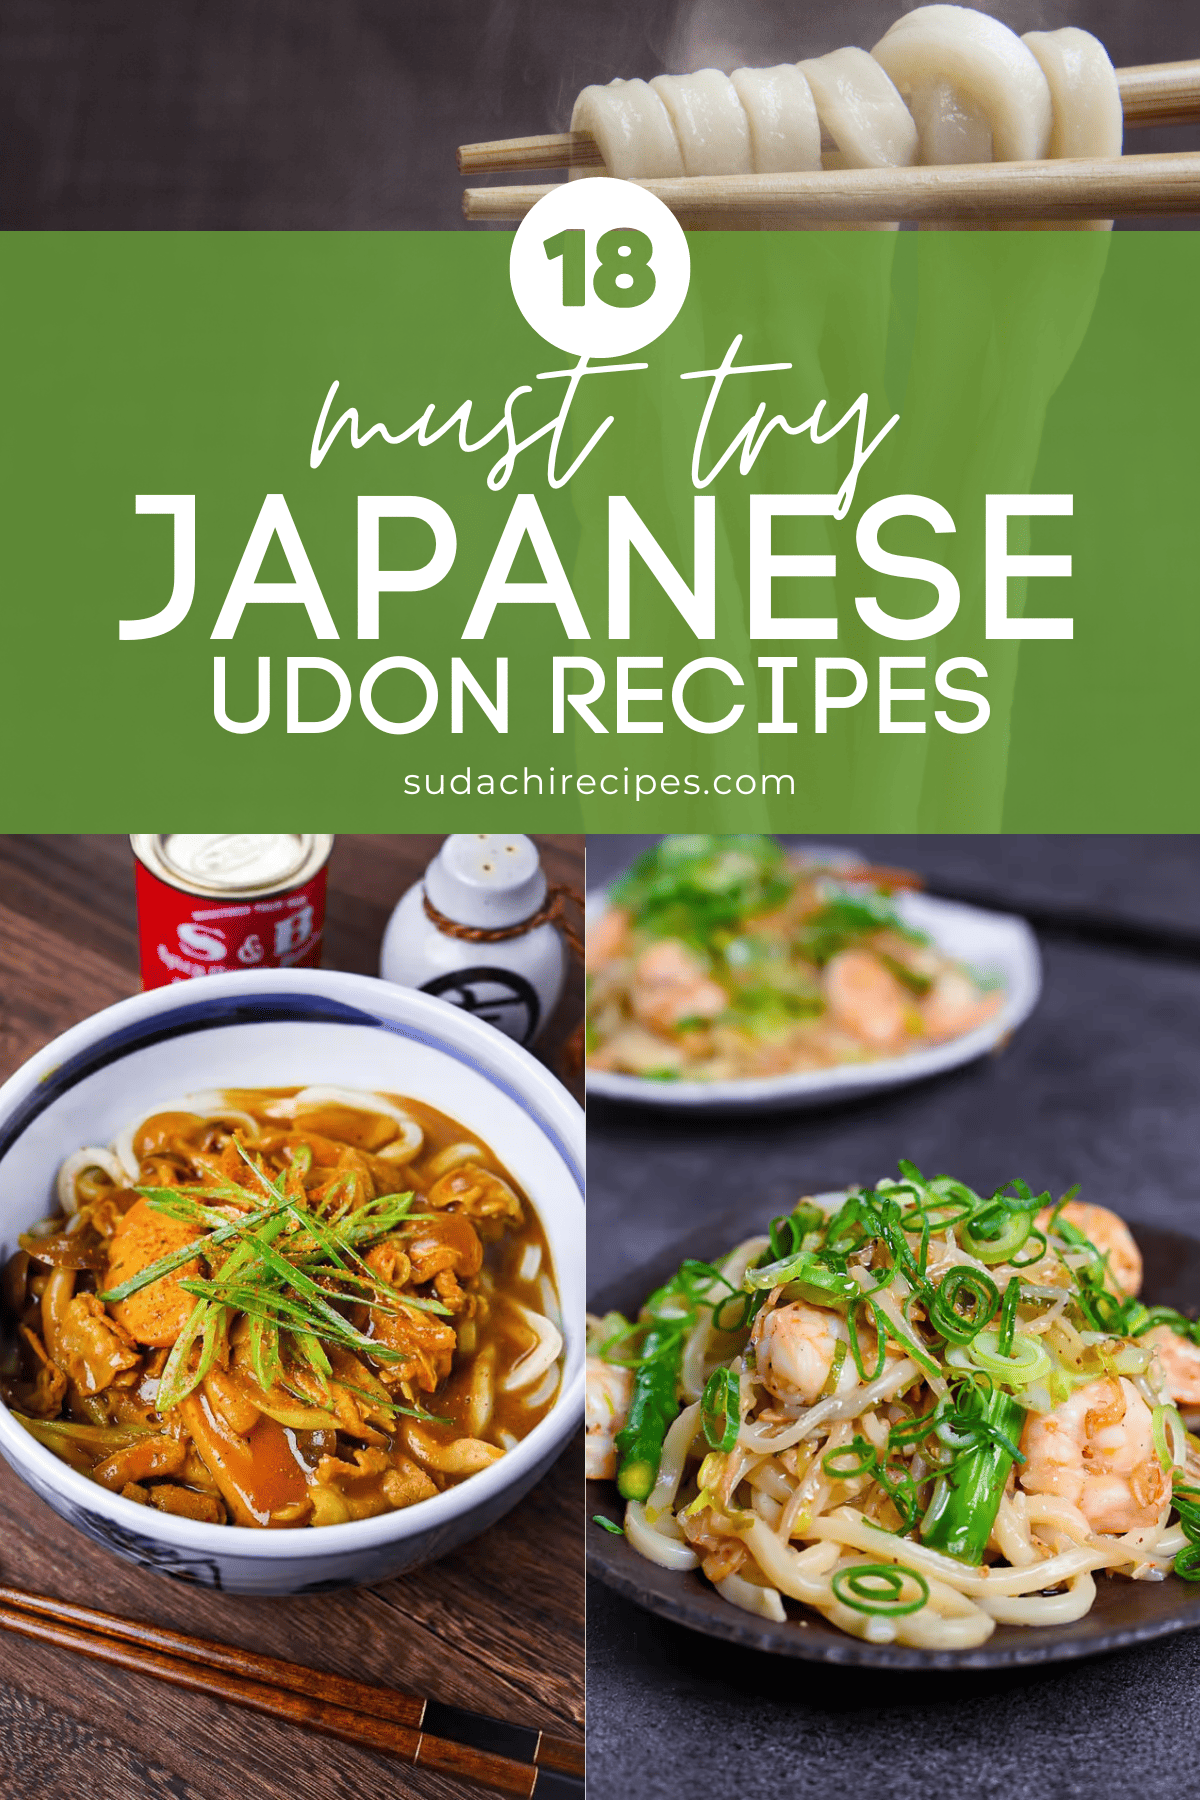 Japanese udon recipes